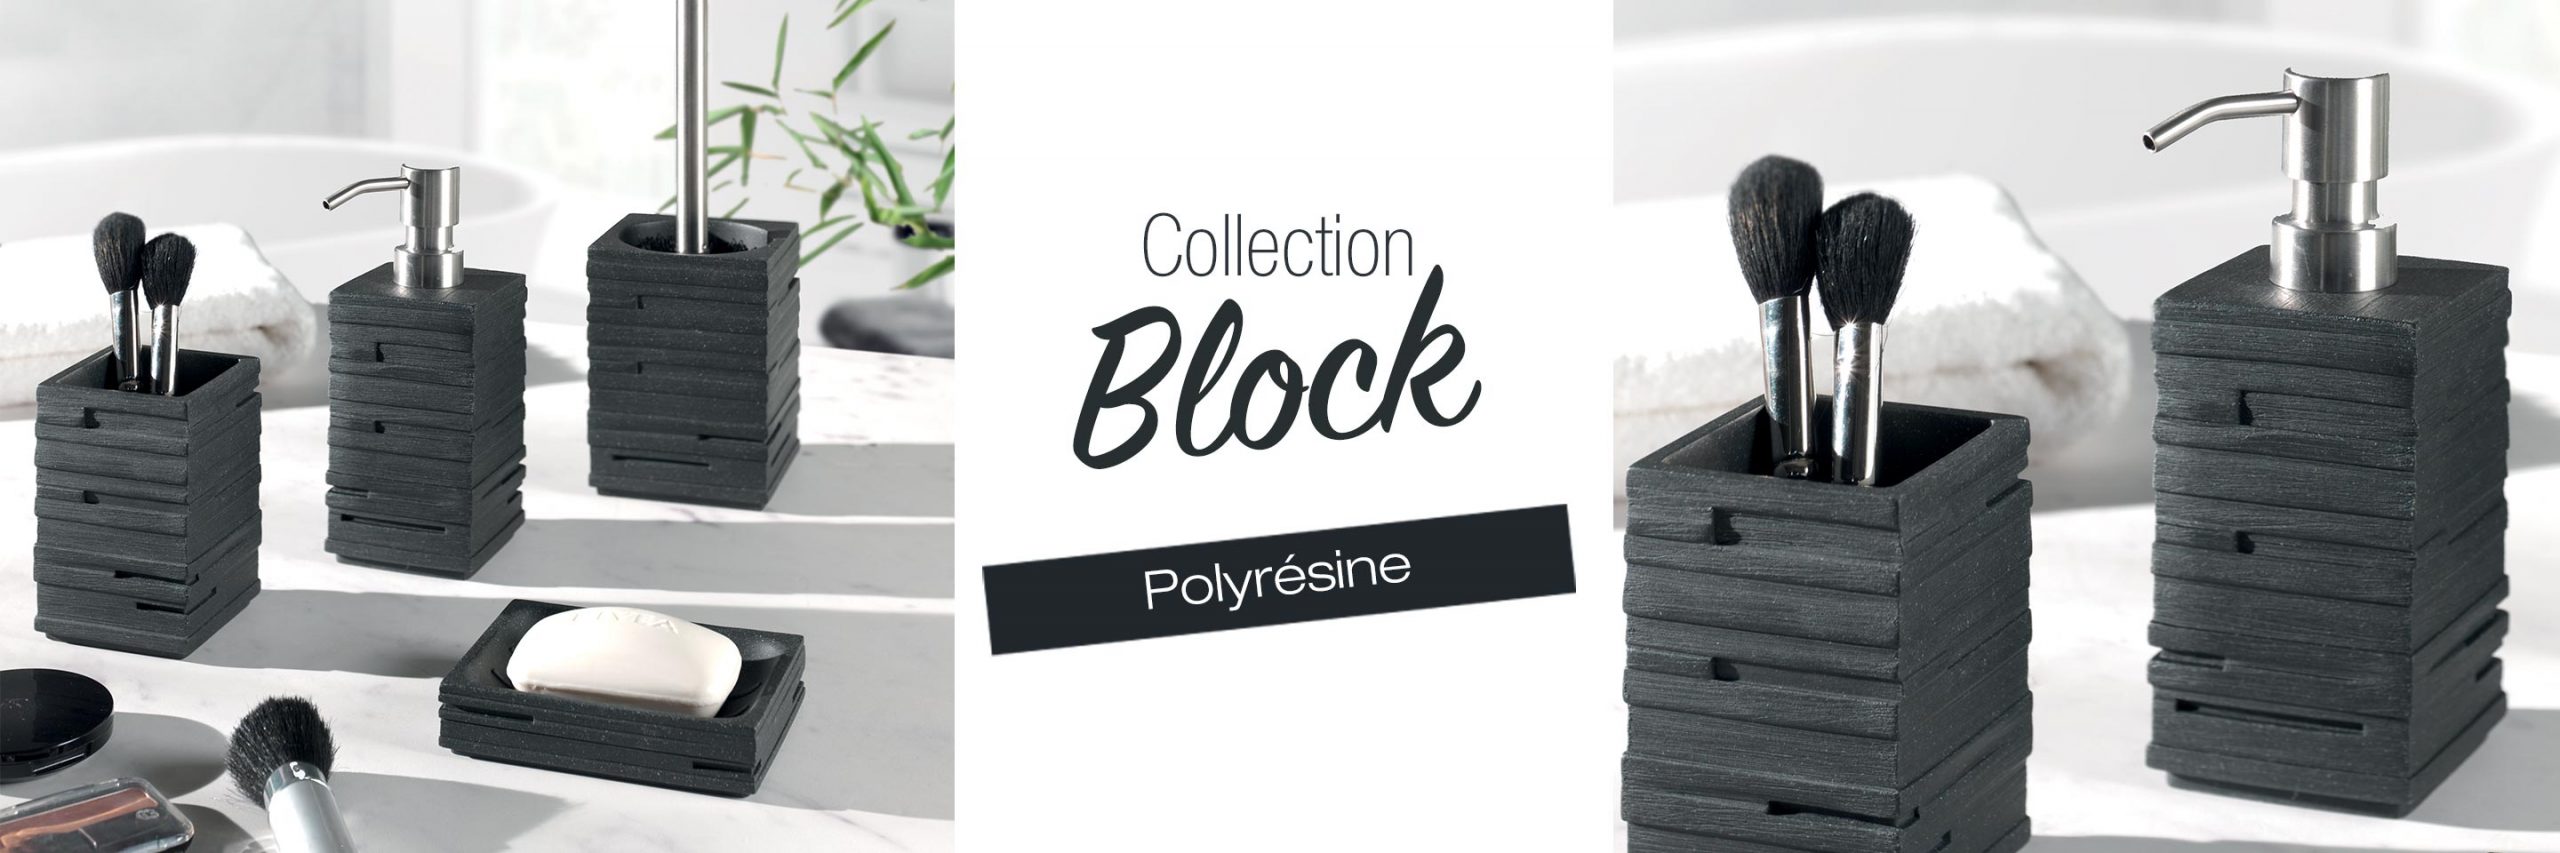 Collection BLOCK polyrésine noire